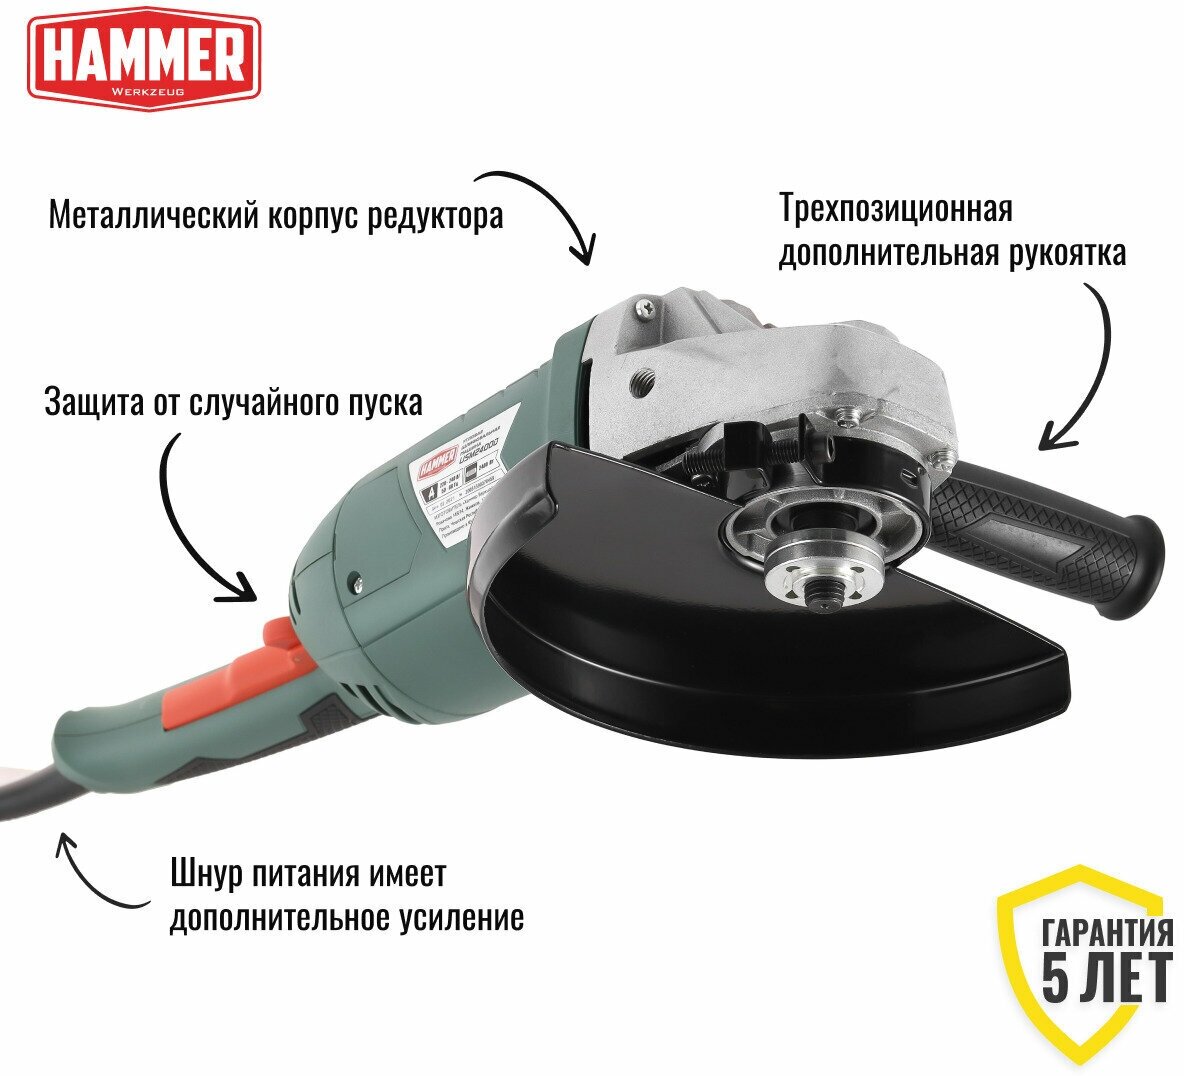 УШМ (болгарка) Hammer - фото №13